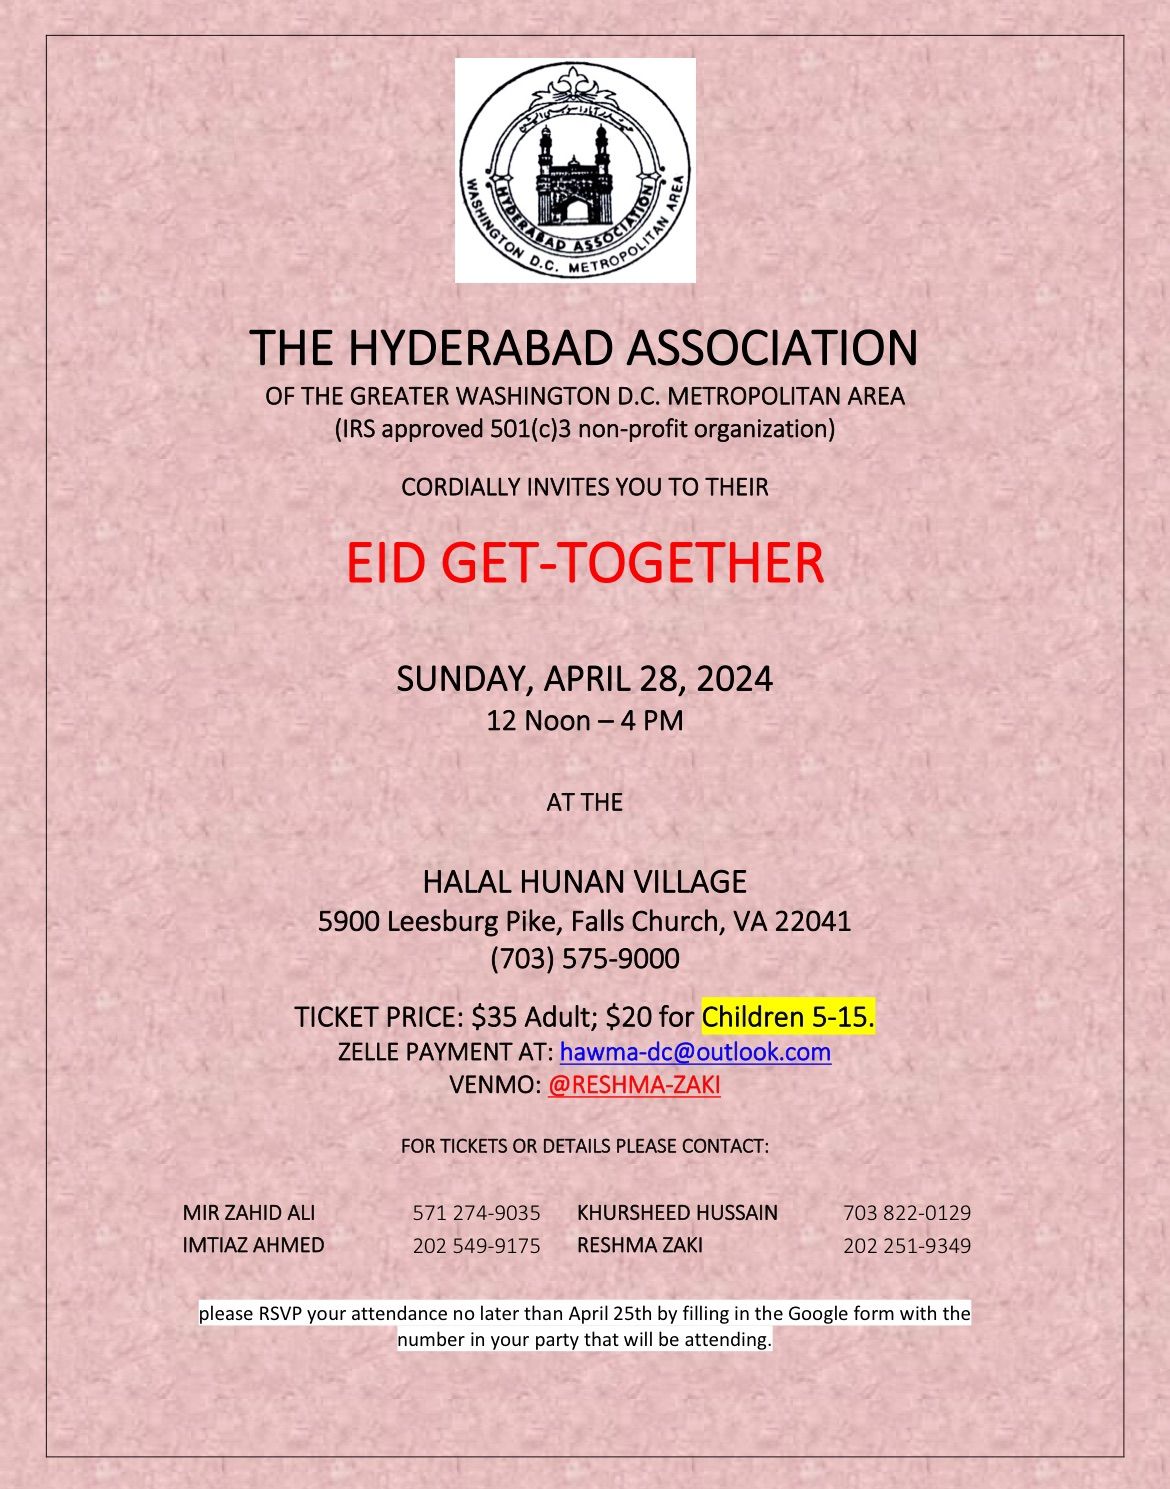 Eid Get-Together